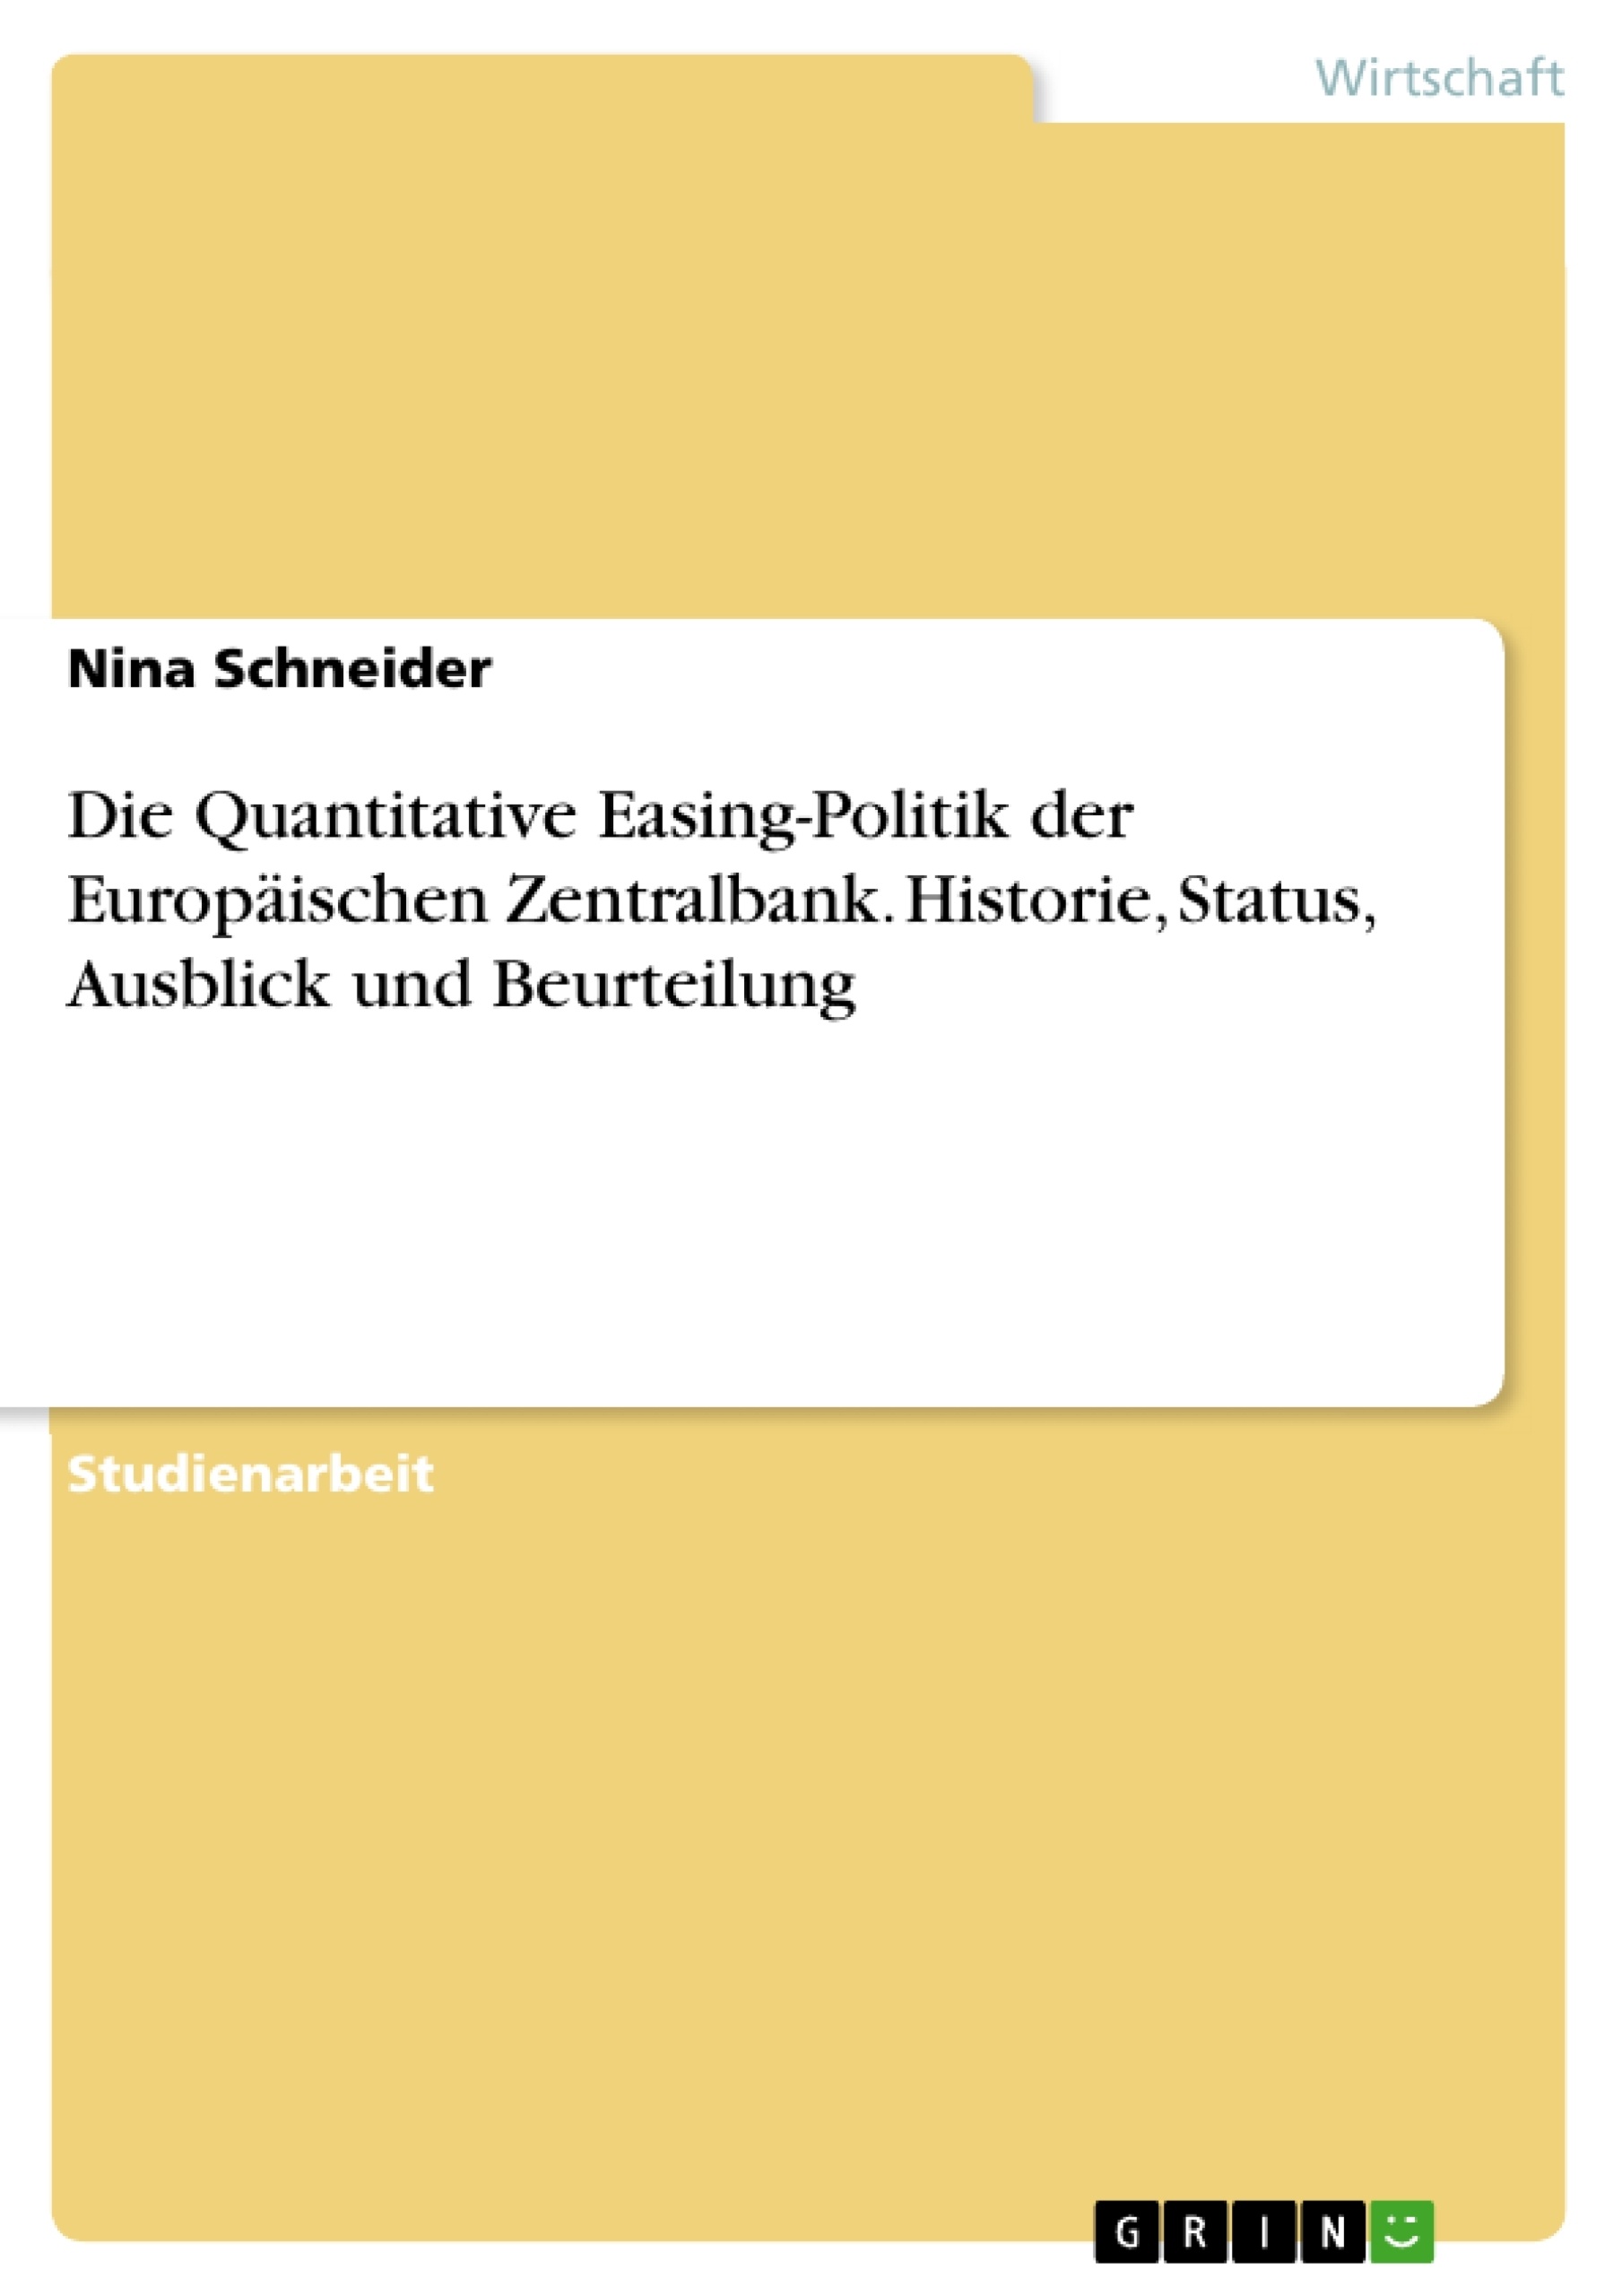 Title: Die Quantitative Easing-Politik der Europäischen Zentralbank. Historie, Status, Ausblick und Beurteilung